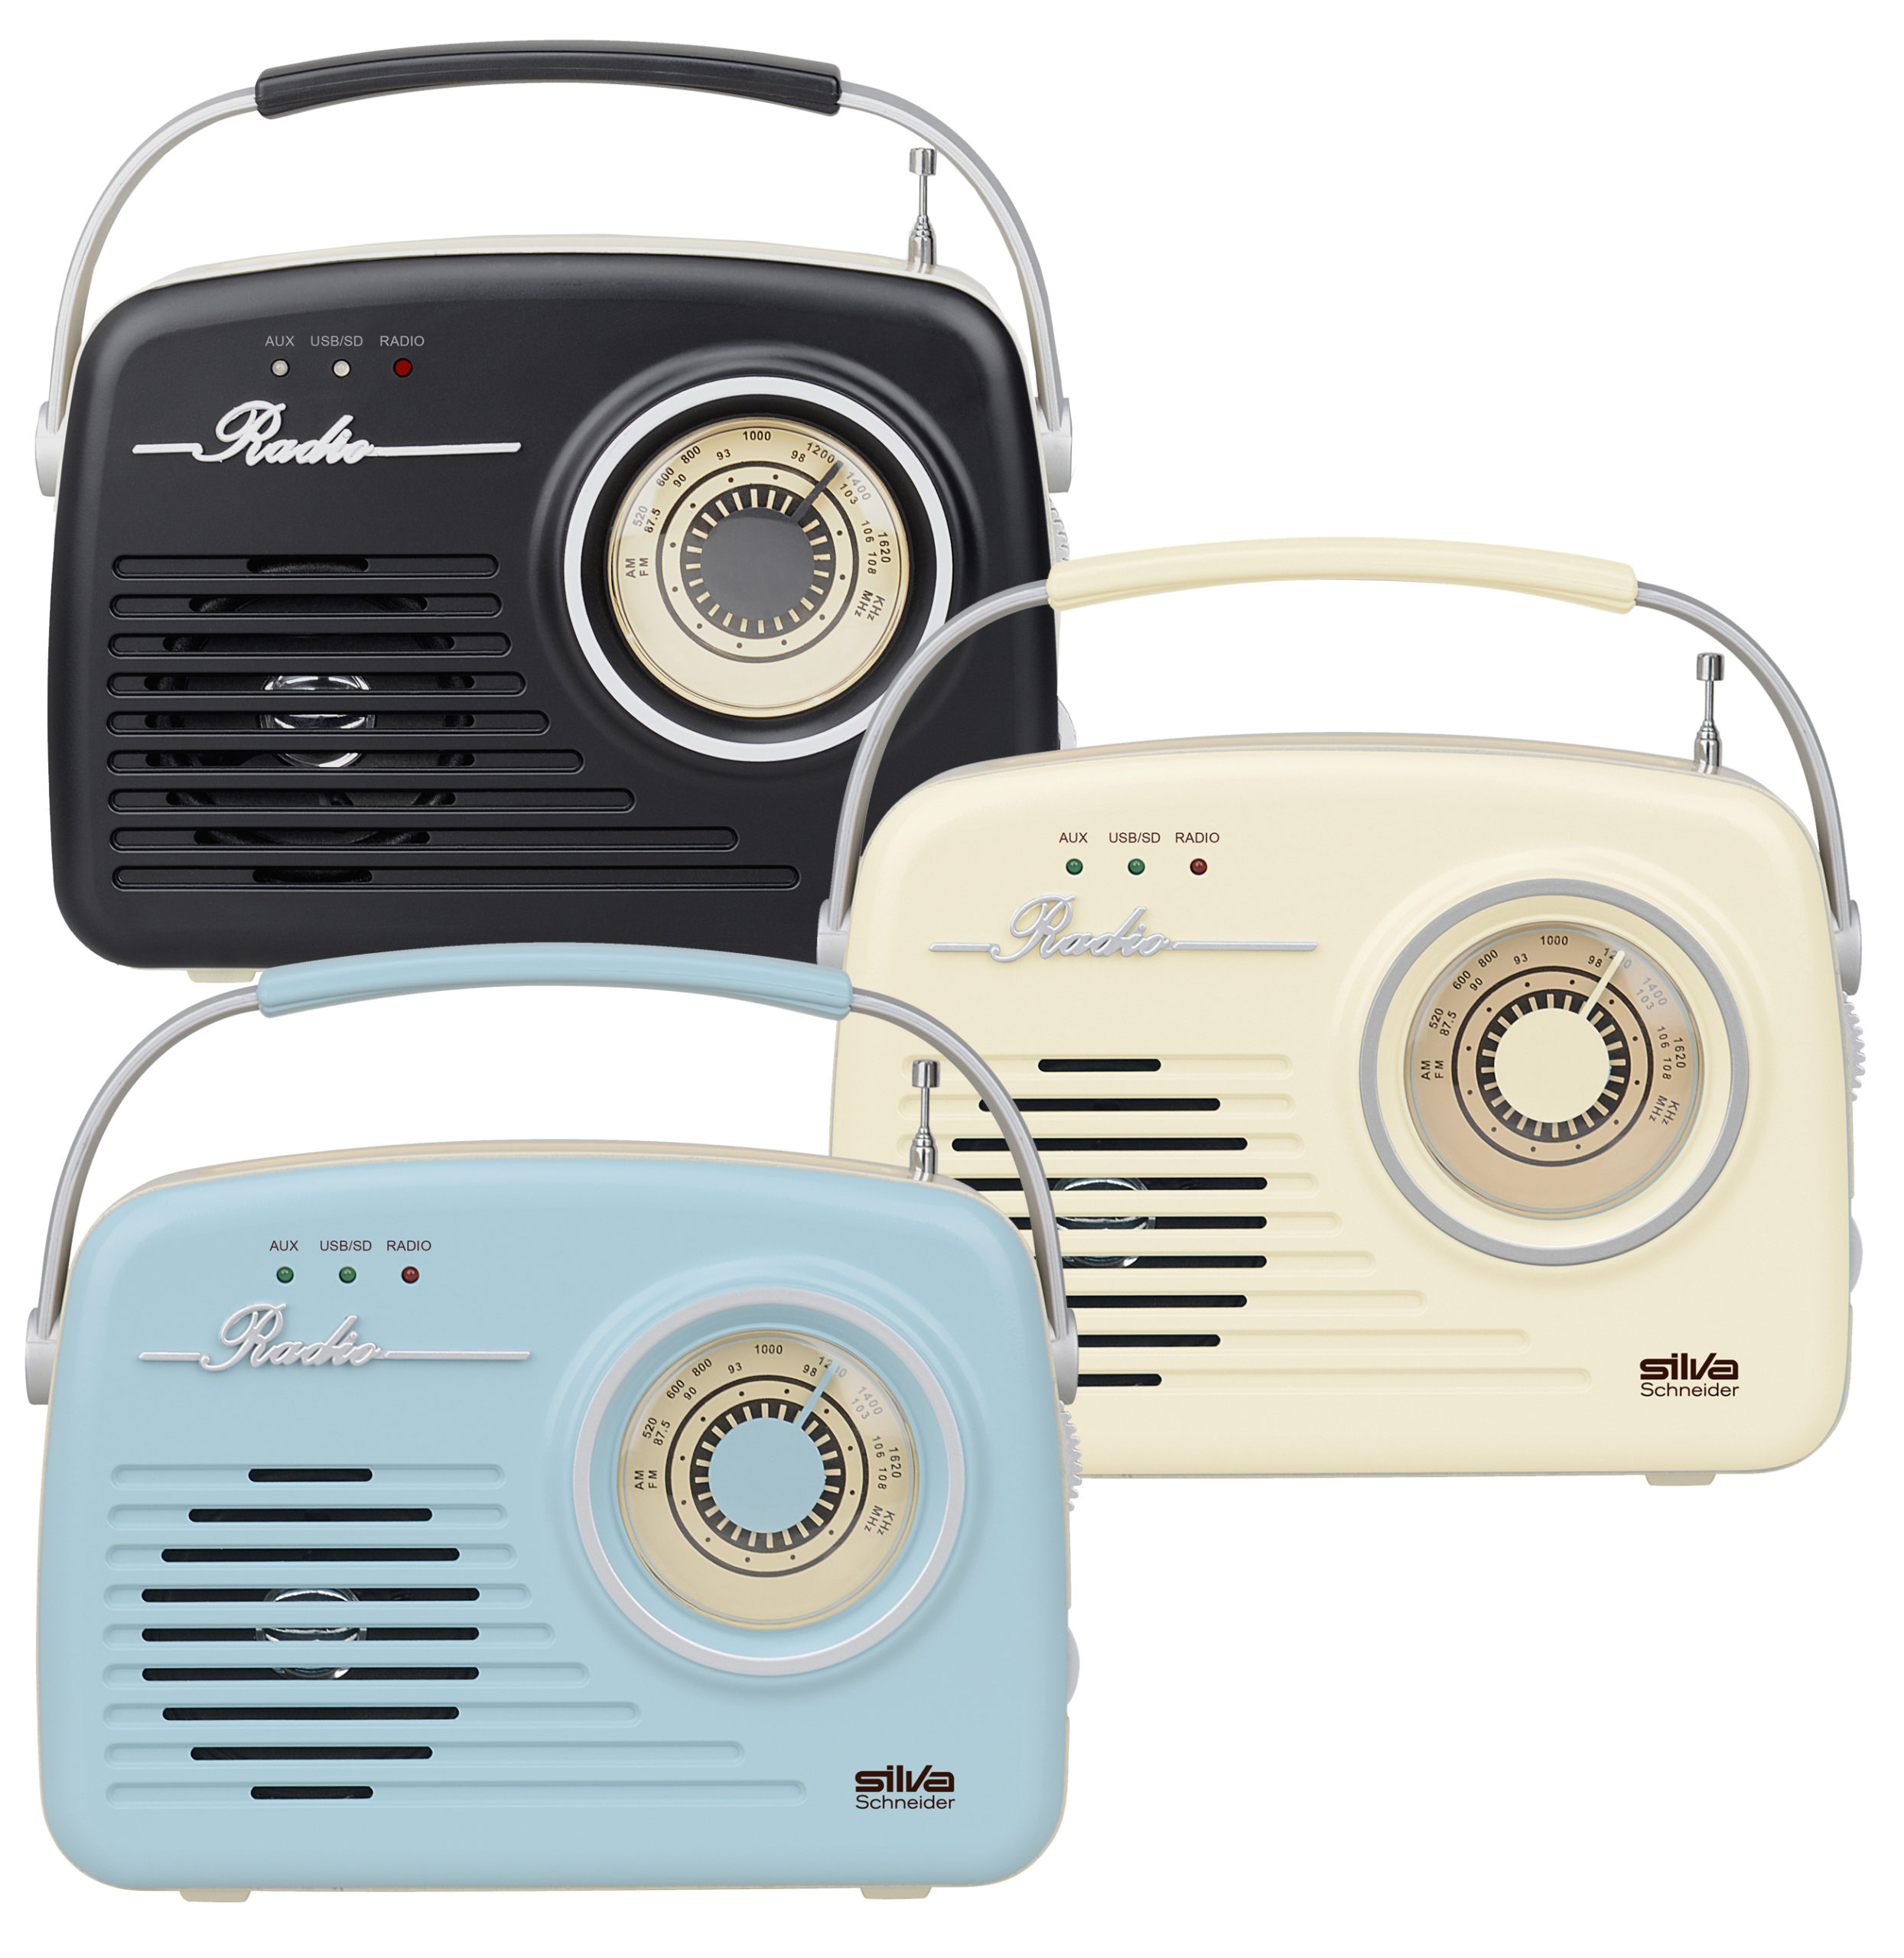 1965 Tragbares Radio, FM, SILVA-SCHNEIDER Mono beige